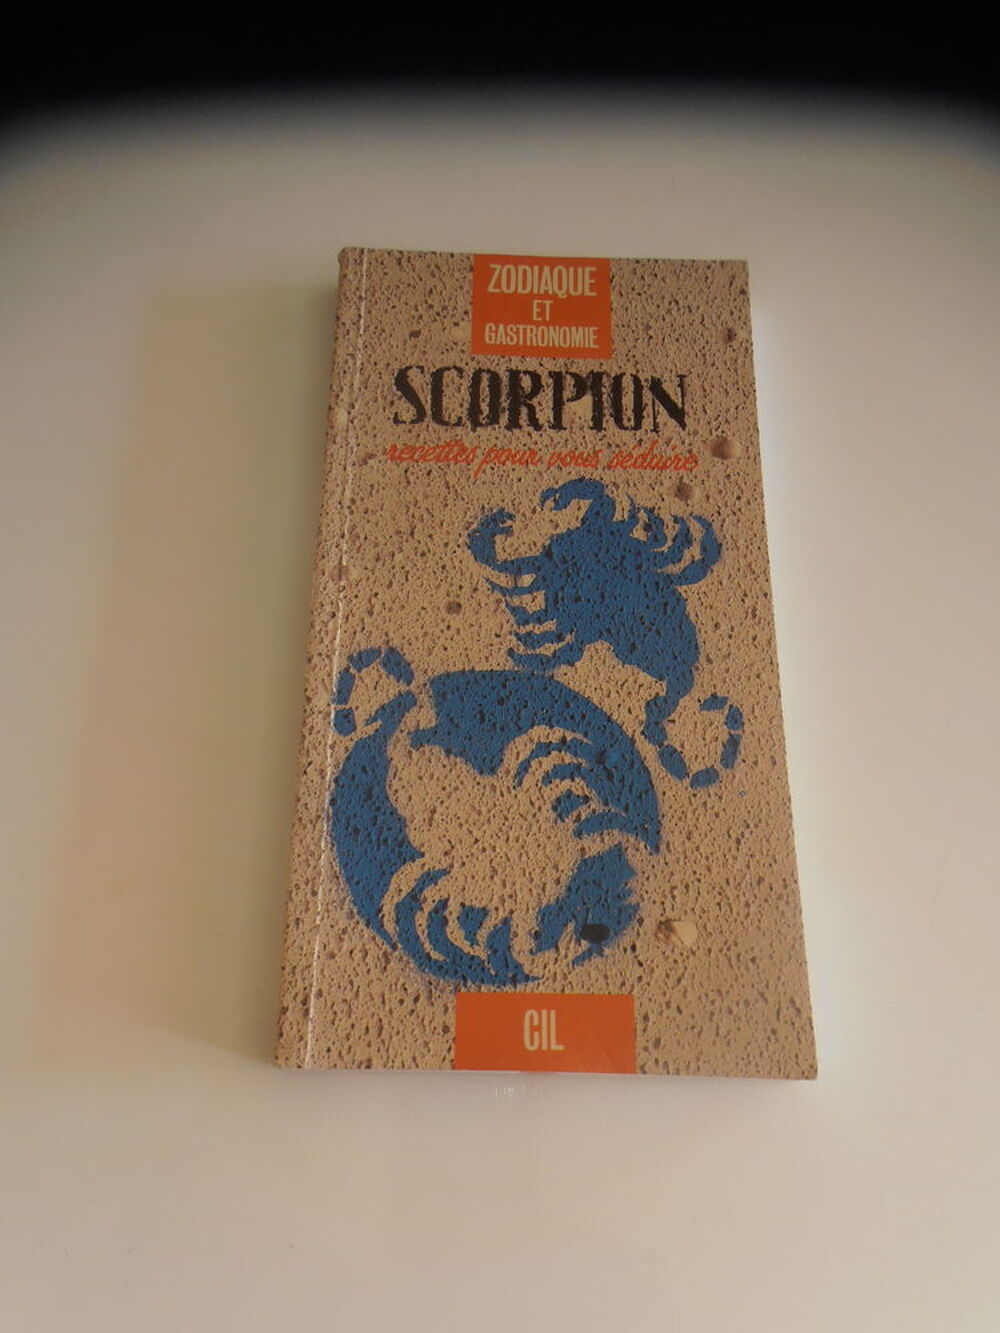 Gastronomie Scorpion (1) Livres et BD